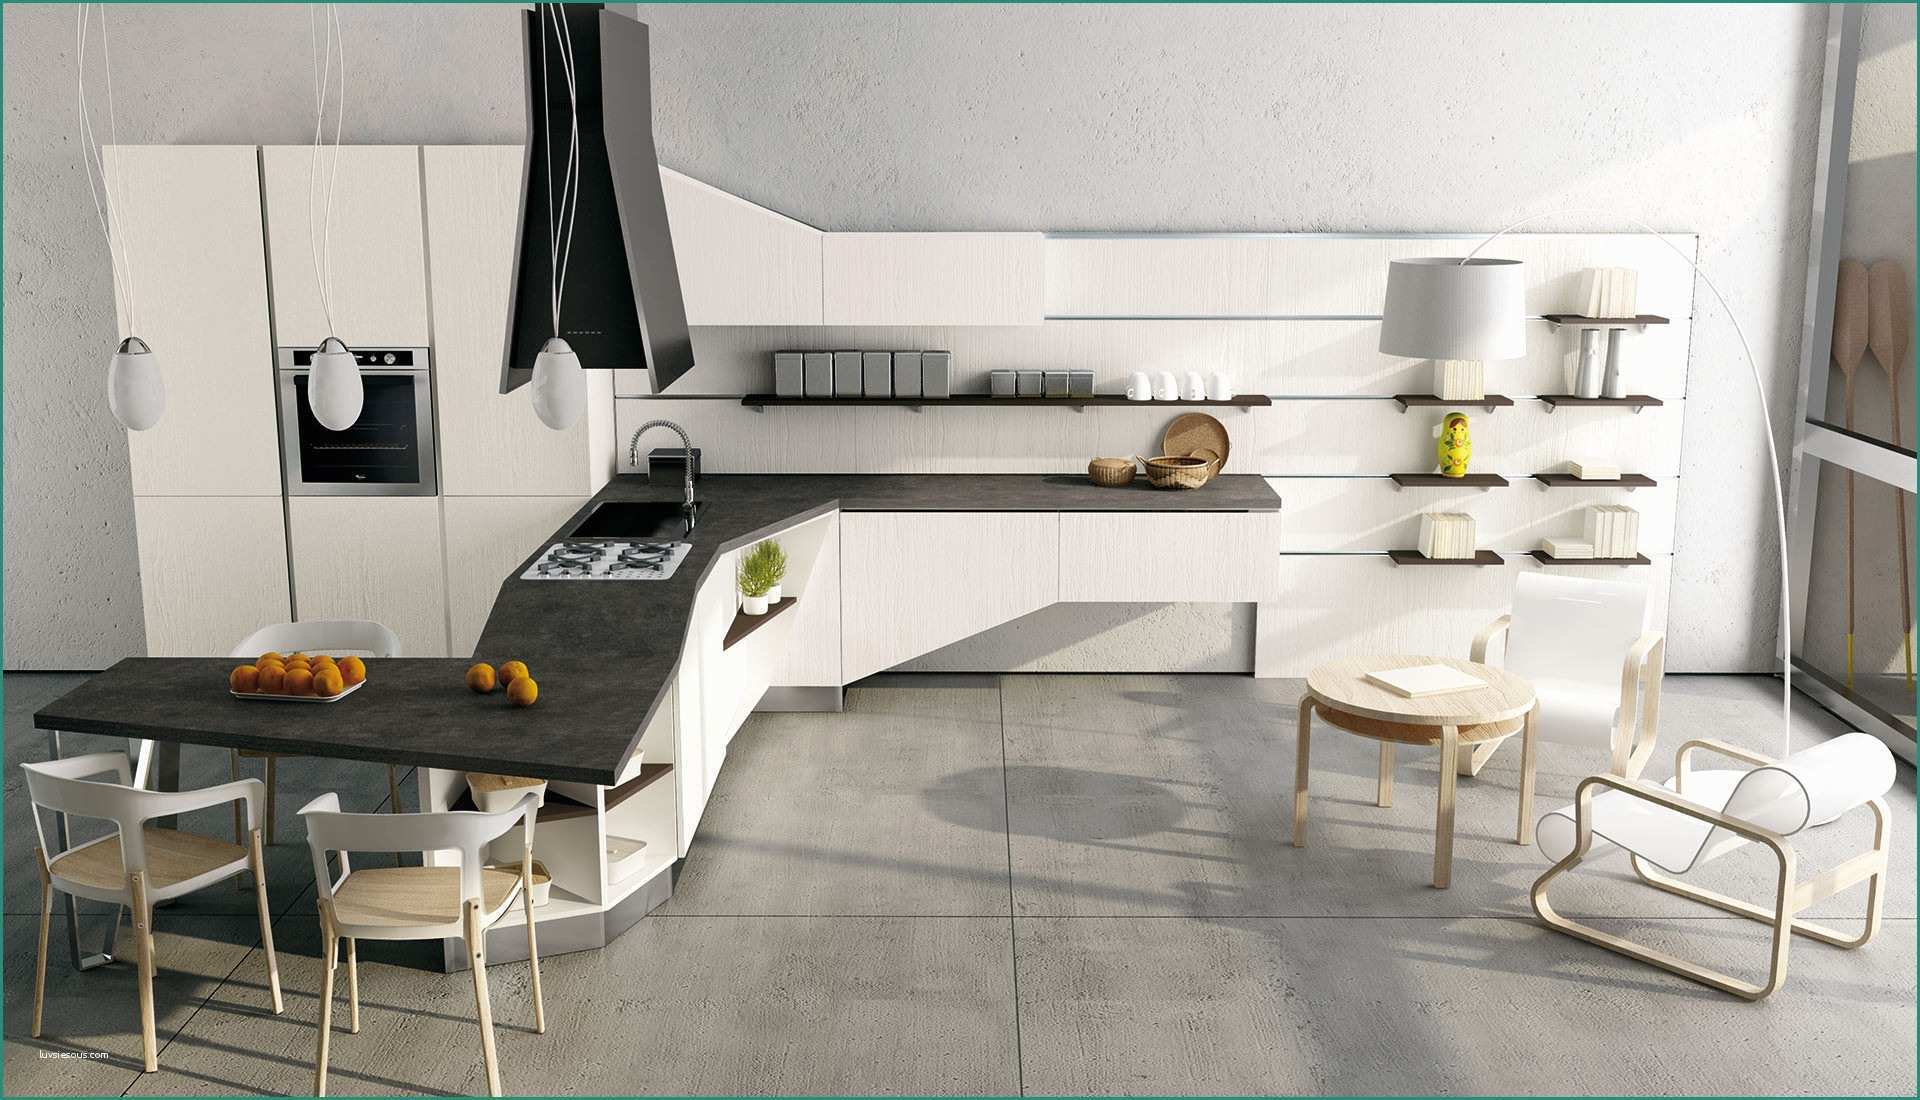 Colonna Dispensa Cucina E Colori Per Cucina Moderna Cucina Moderna Colore Bianco Parashizzi